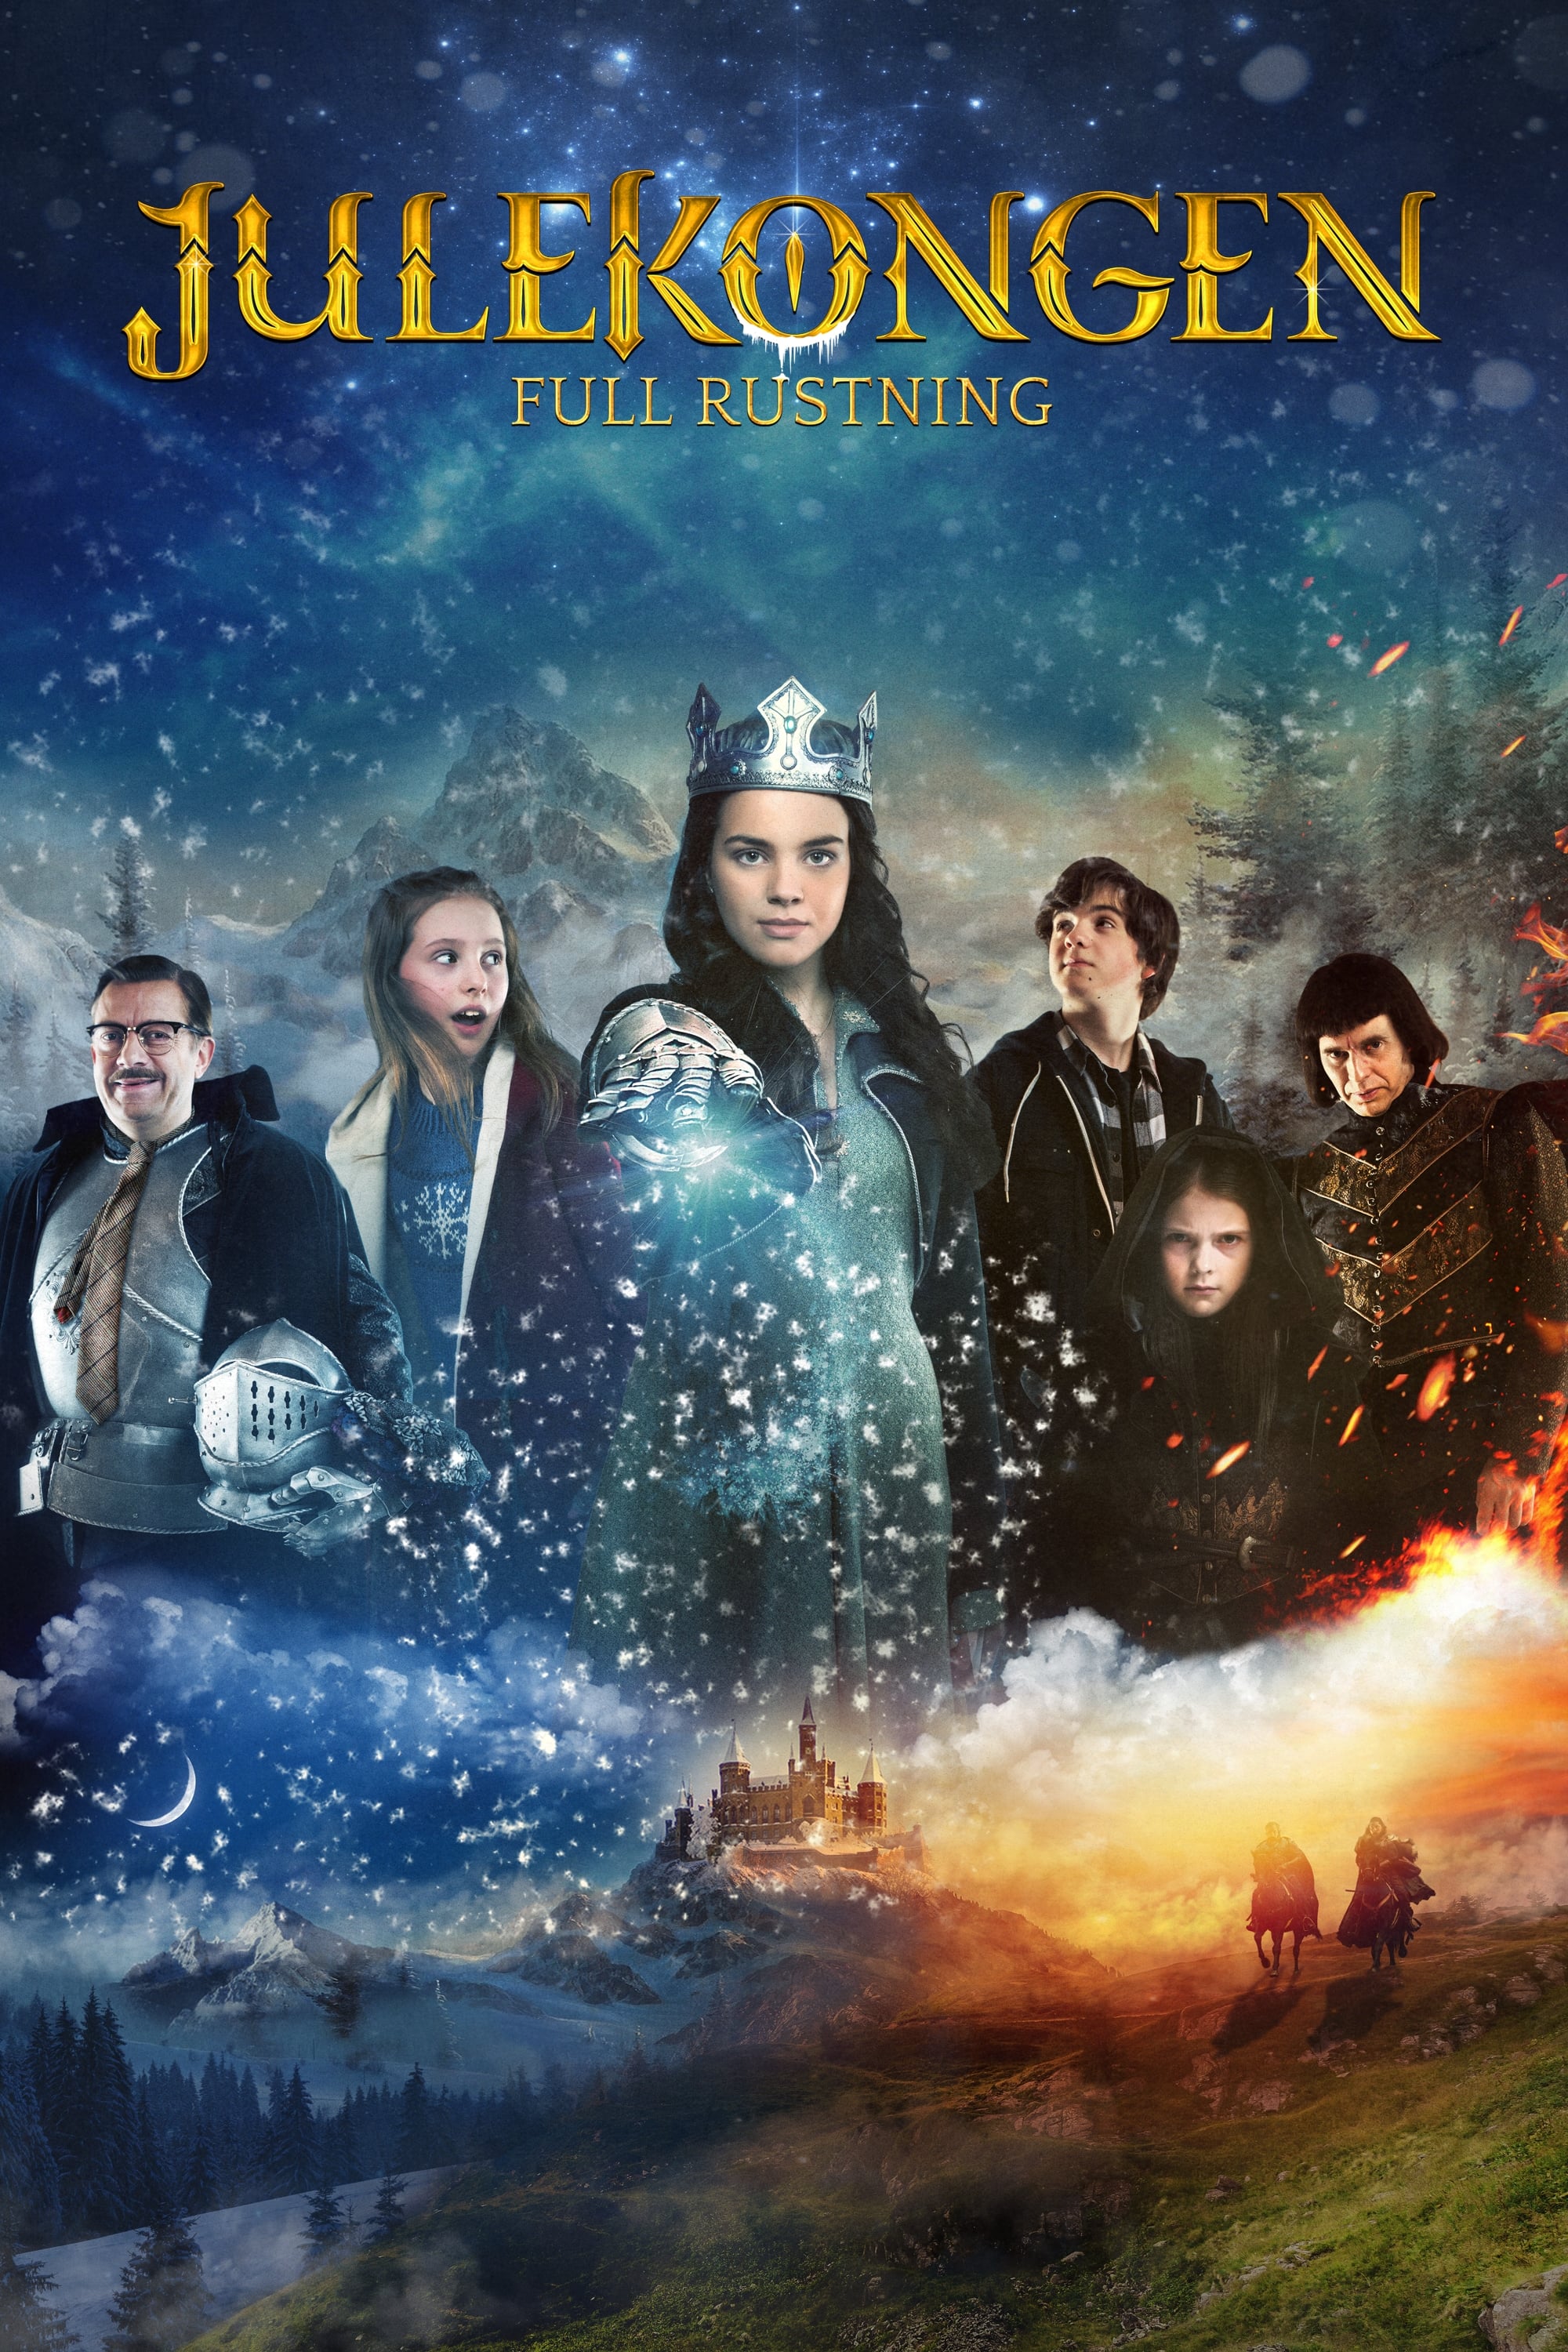 The Christmas King: In Full Armor (2015)